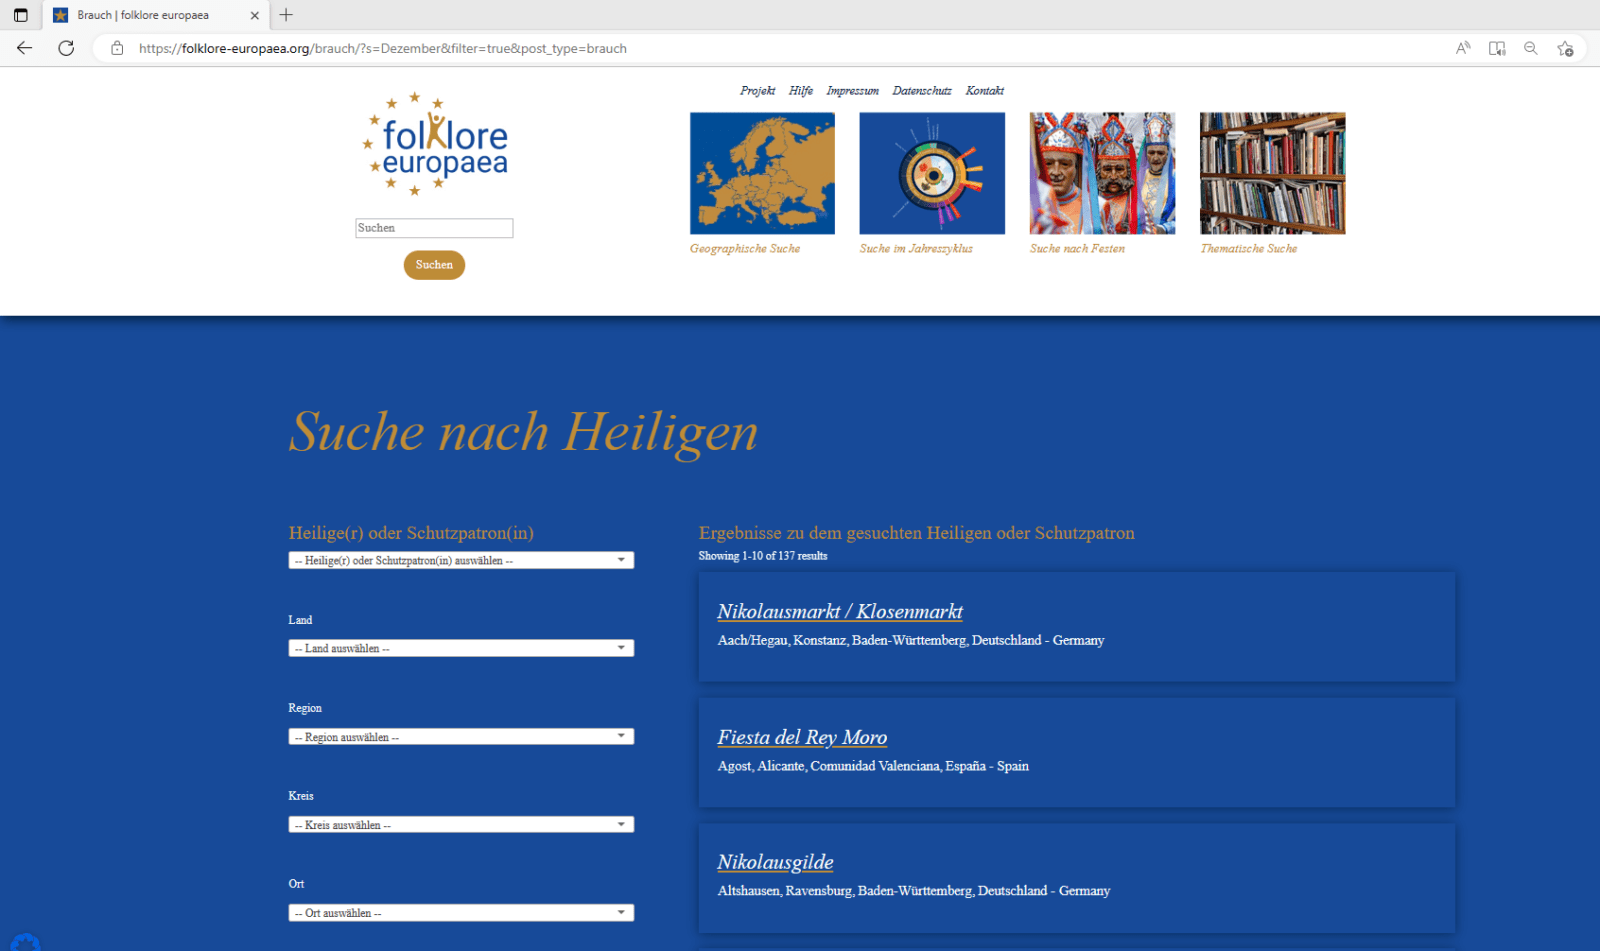 Auf der Startseite der Datenbank www.folklore-europaea.org kann ein Suchbegriff eingegeben werden. Die Suche kann über einen Ort, im Jahresverlauf oder nach einem Fest oder Thema erfolgen.